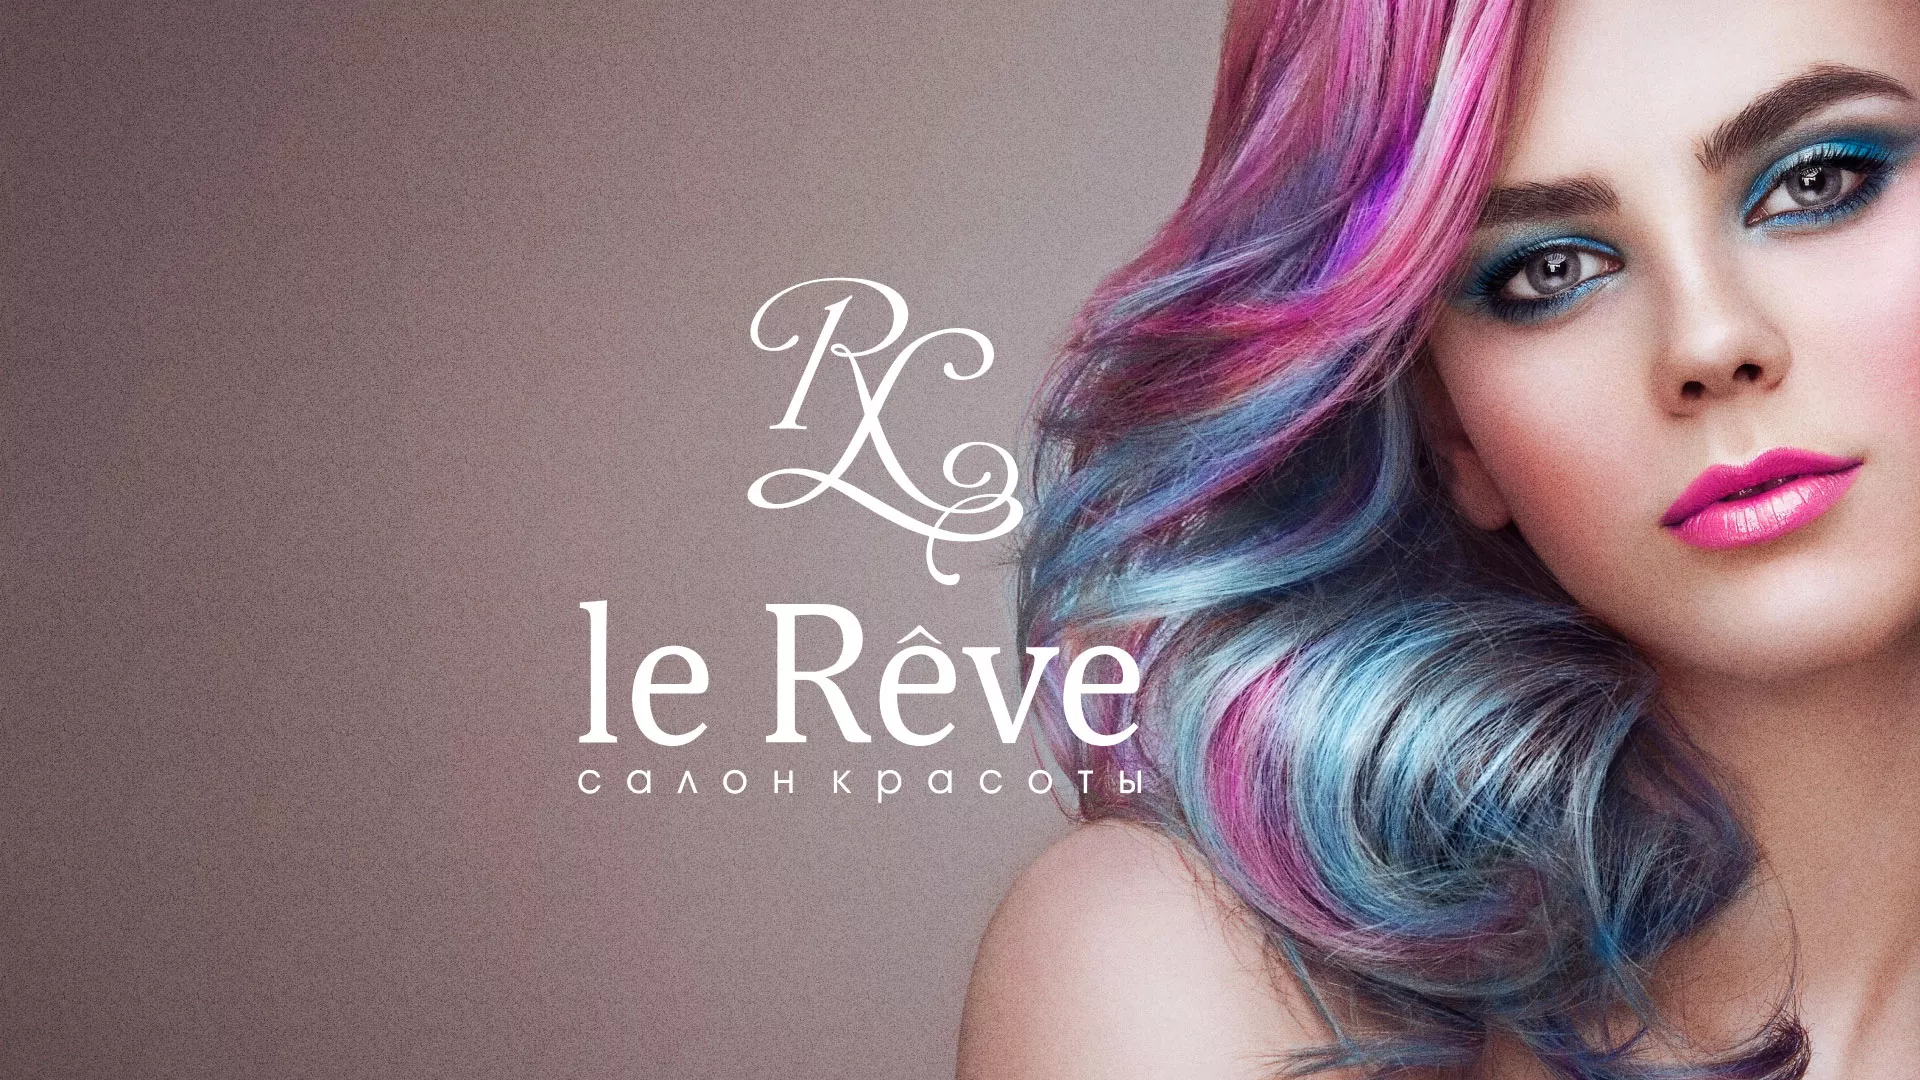 Создание сайта для салона красоты «Le Reve» в Шилке